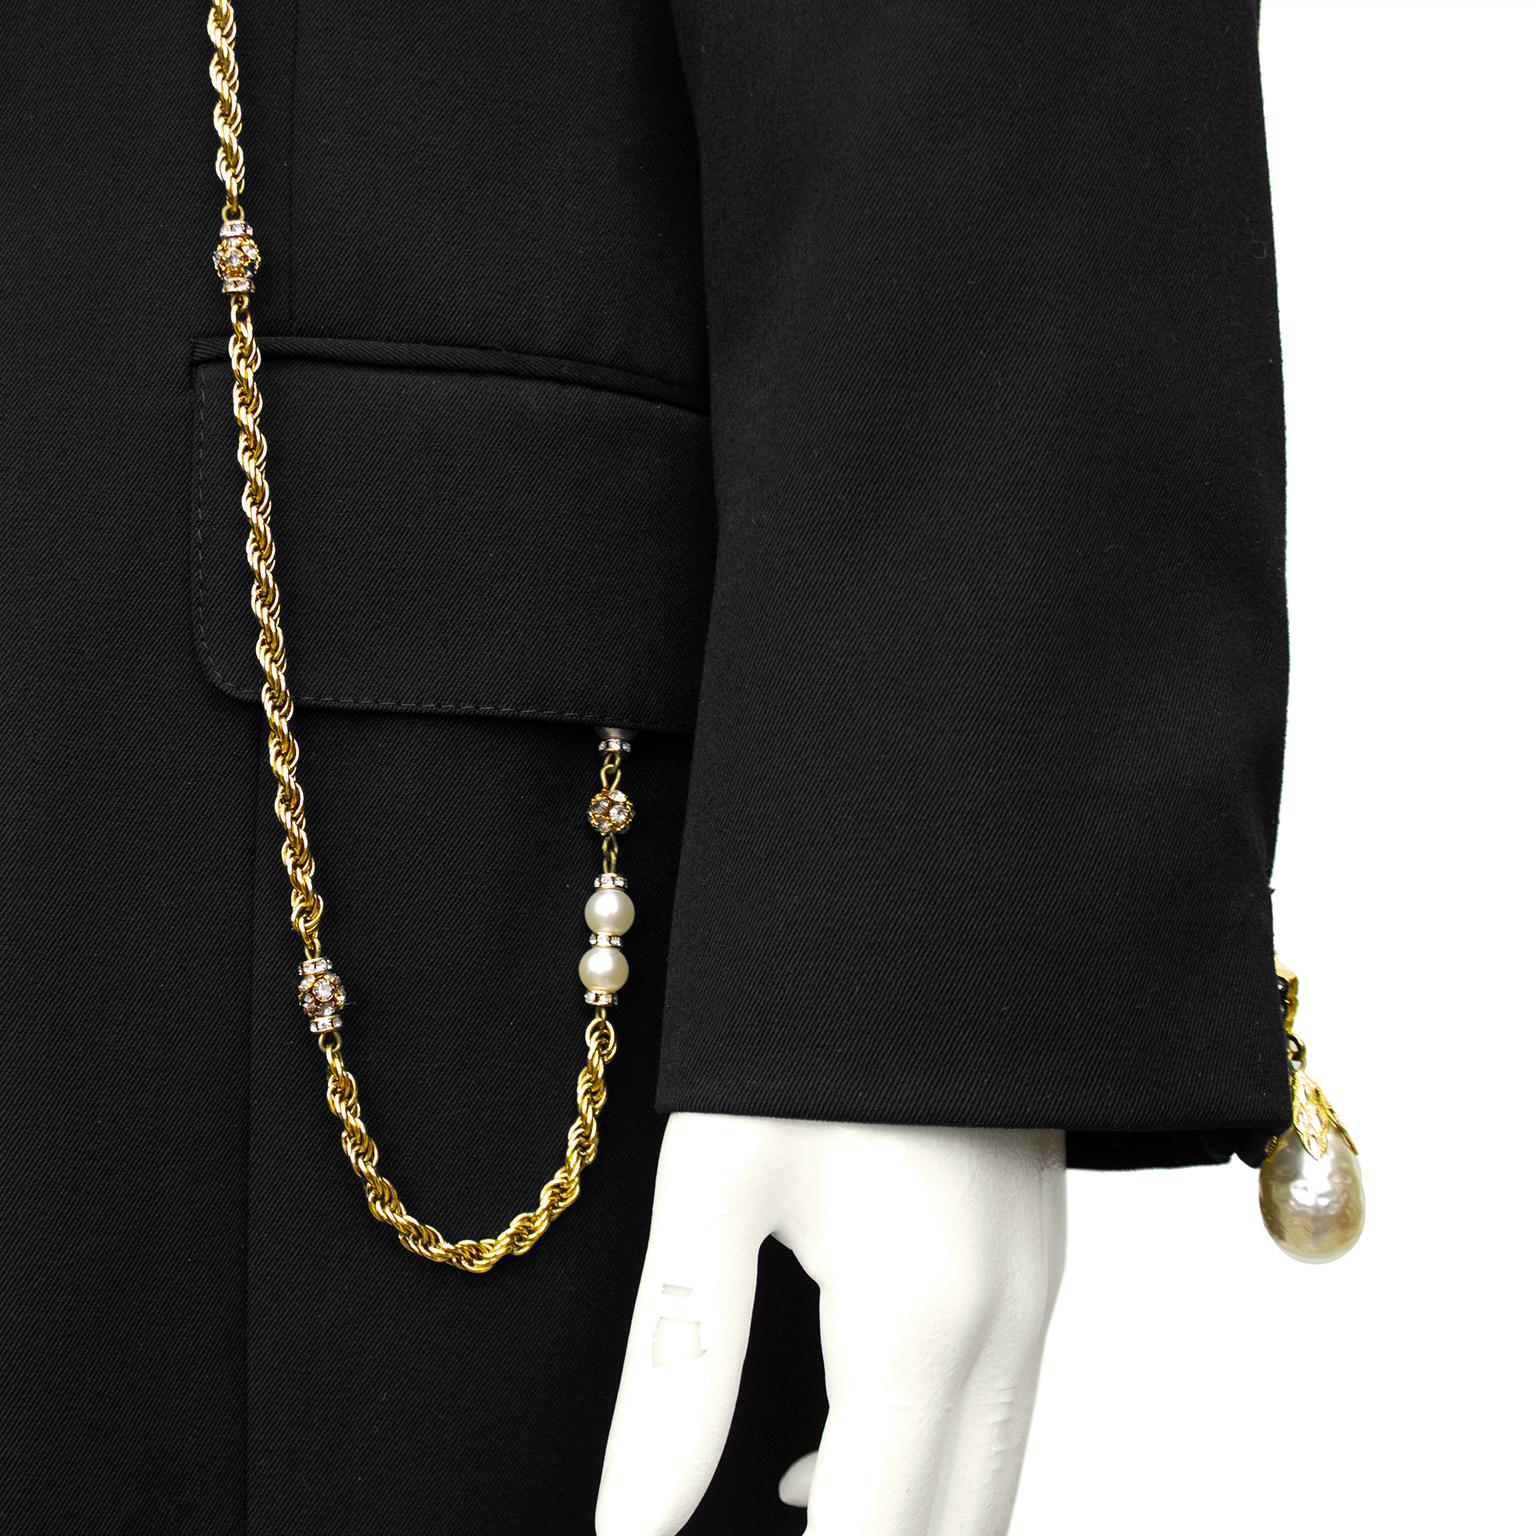 Gianfranco Ferr\u00e9 Korte blazer zwart gestreept patroon zakelijke stijl Mode Blazers Korte blazers Gianfranco Ferré 